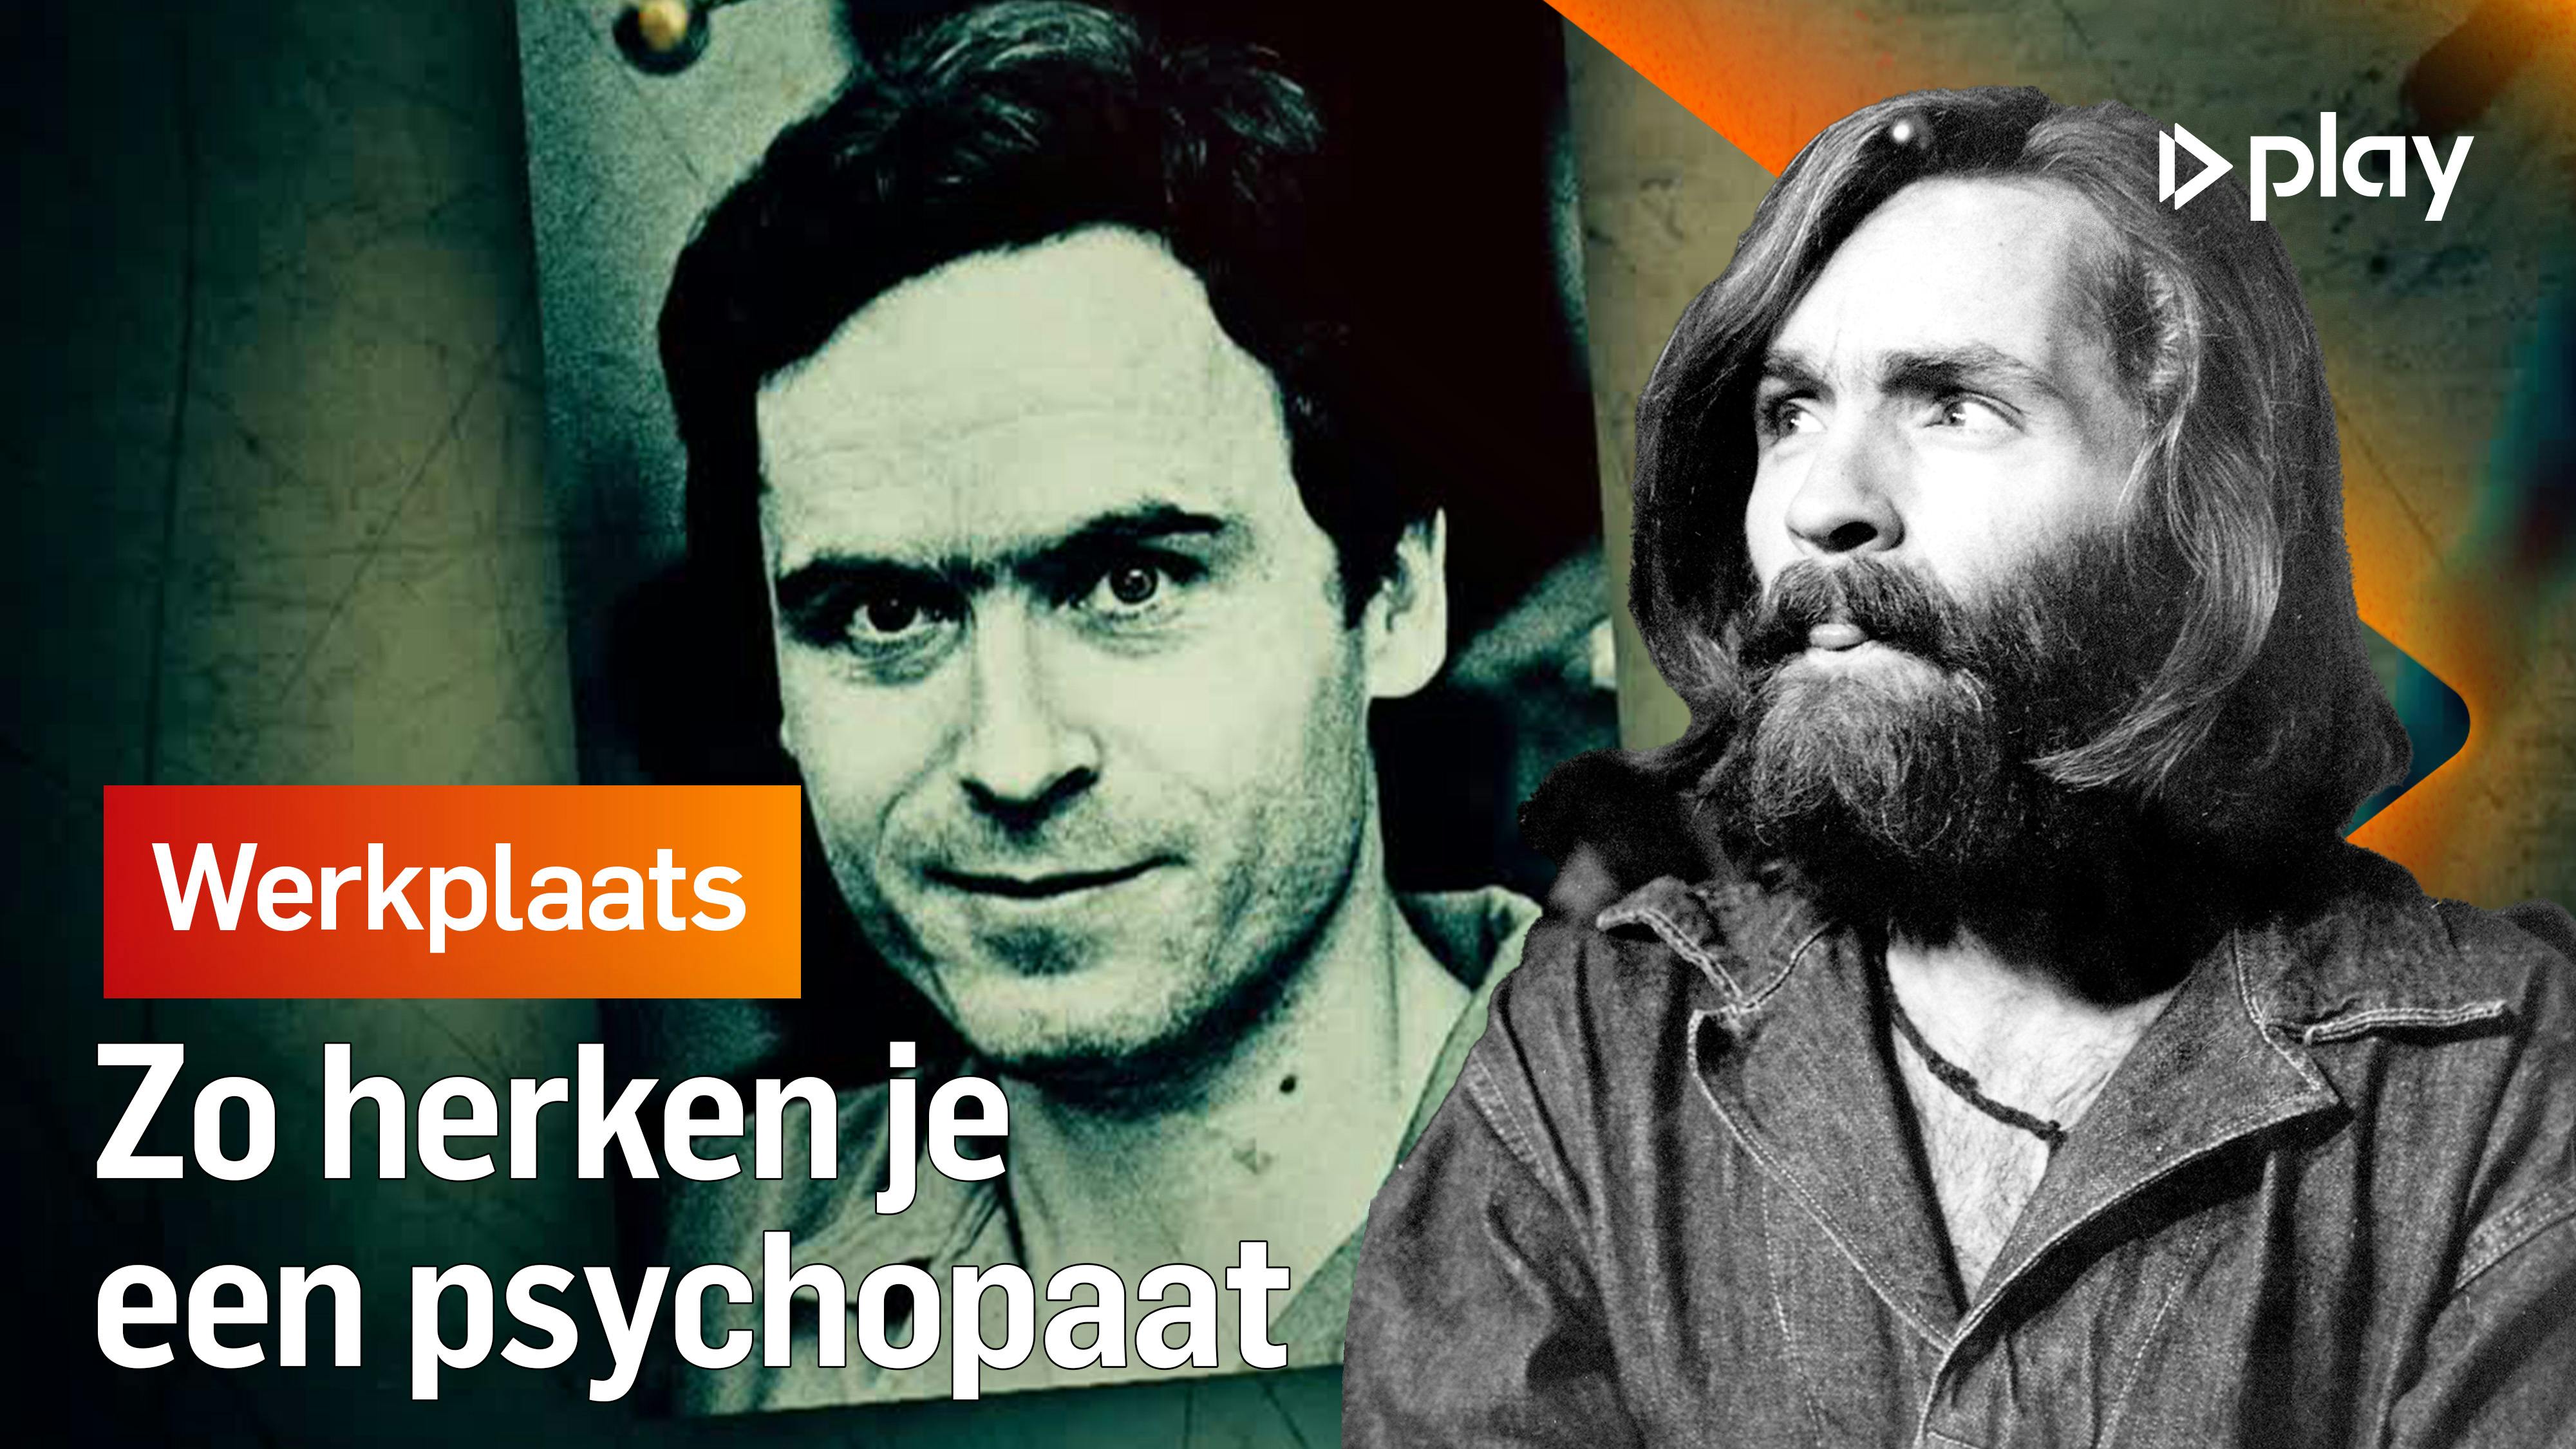 1% van de Nederlanders is psychopaat: zo herken je er eentje